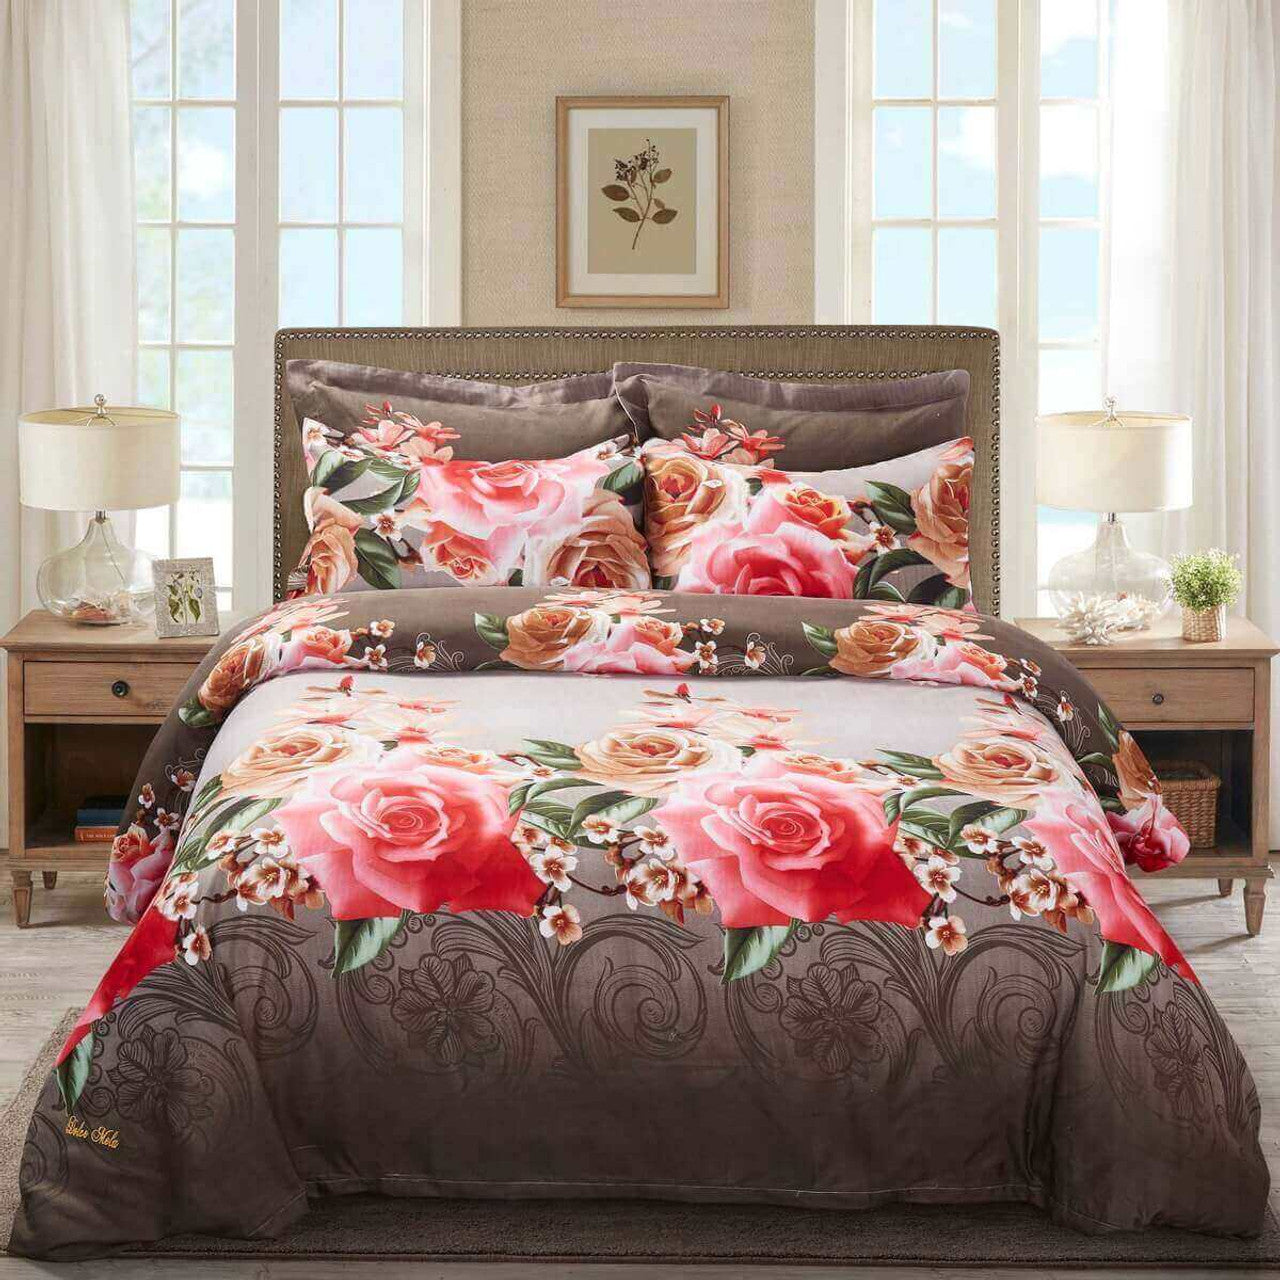 Duvet Cover Set, King Size Floral Bedding, Dolce Mela - Rose Medley DM708K